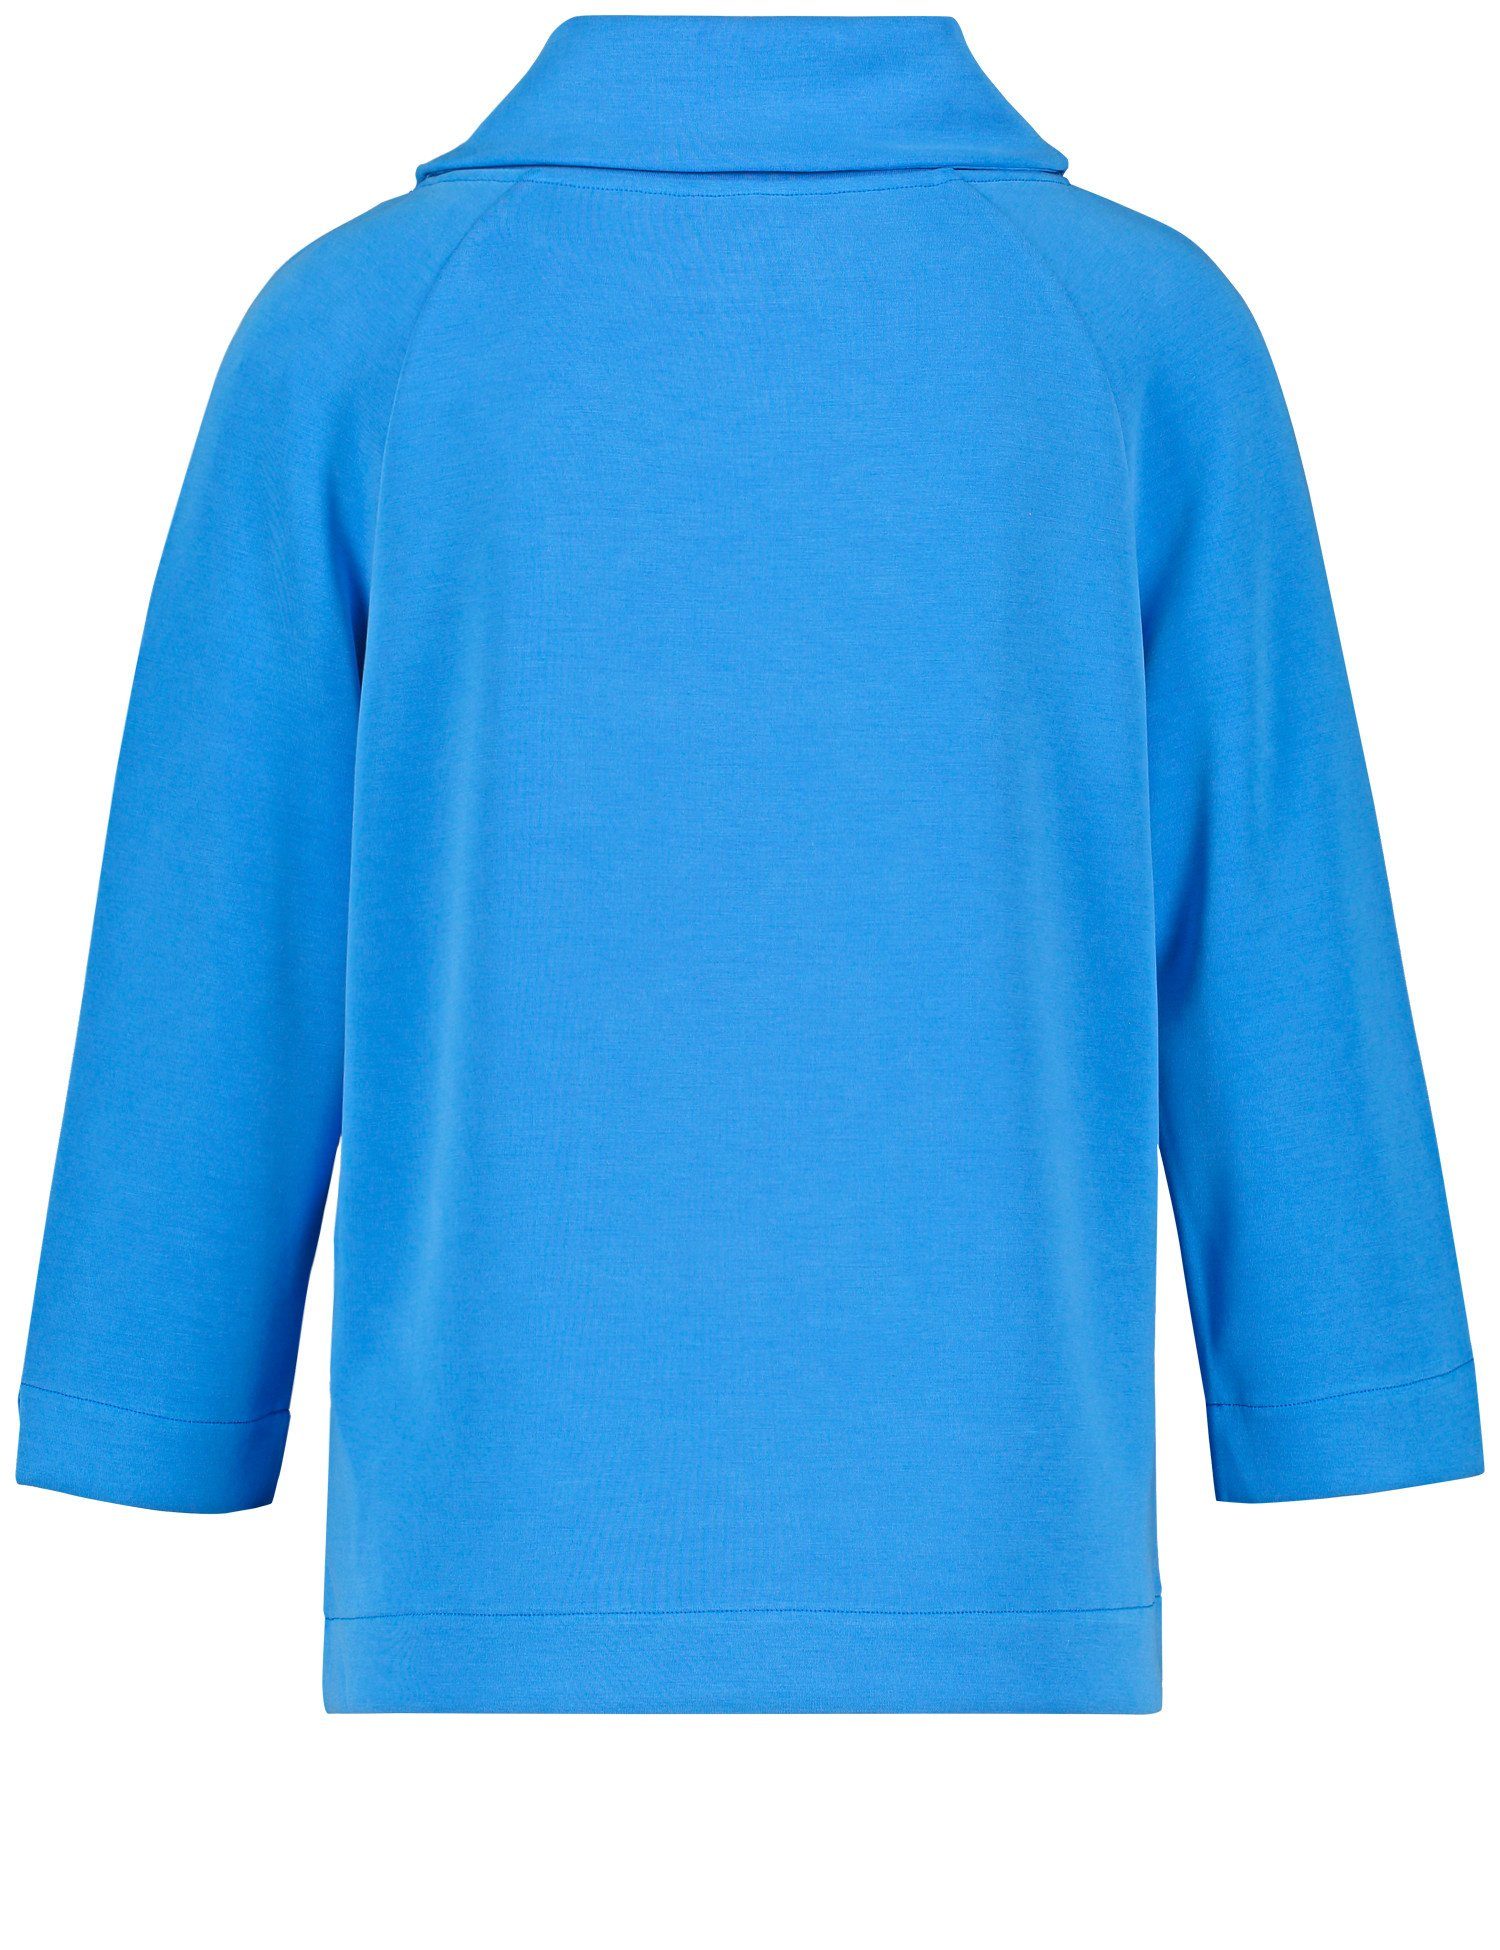 GERRY WEBER 3/4-Arm-Shirt Interlock-Jersey Bright 3/4 Blue Arm aus Shirt